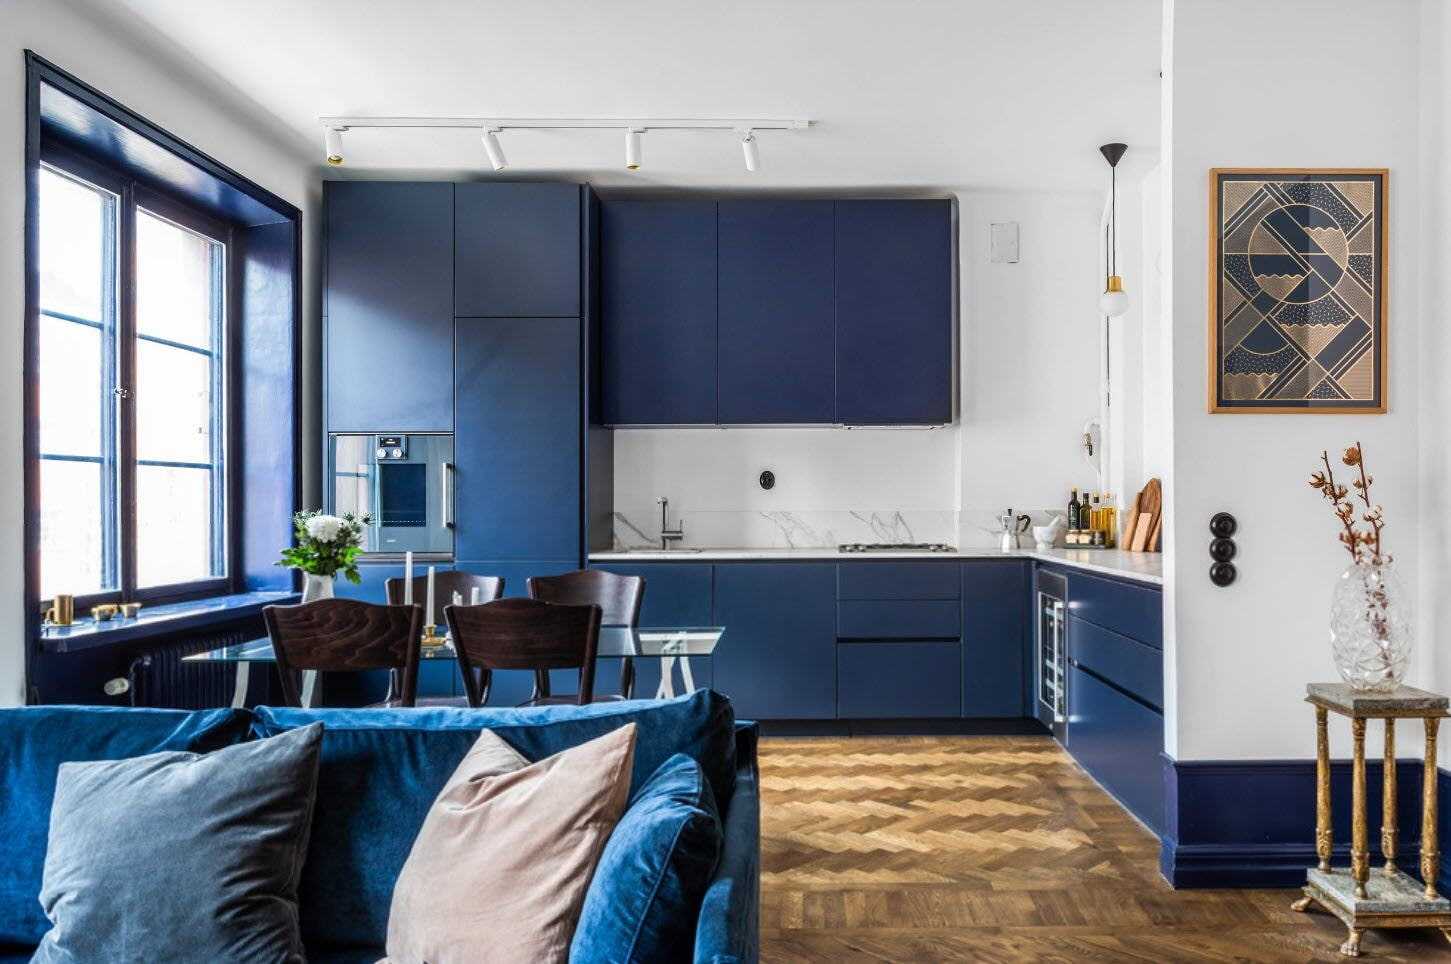 Кухня синяя с деревом элементы интерьера, советы по оформлению Какие оттенки синего использовать в интерьере кухни, сочетание синего с другими оттенками Выбор стиля интерьера для обустройства кухни в синем цвете с деревом, фотогалерея